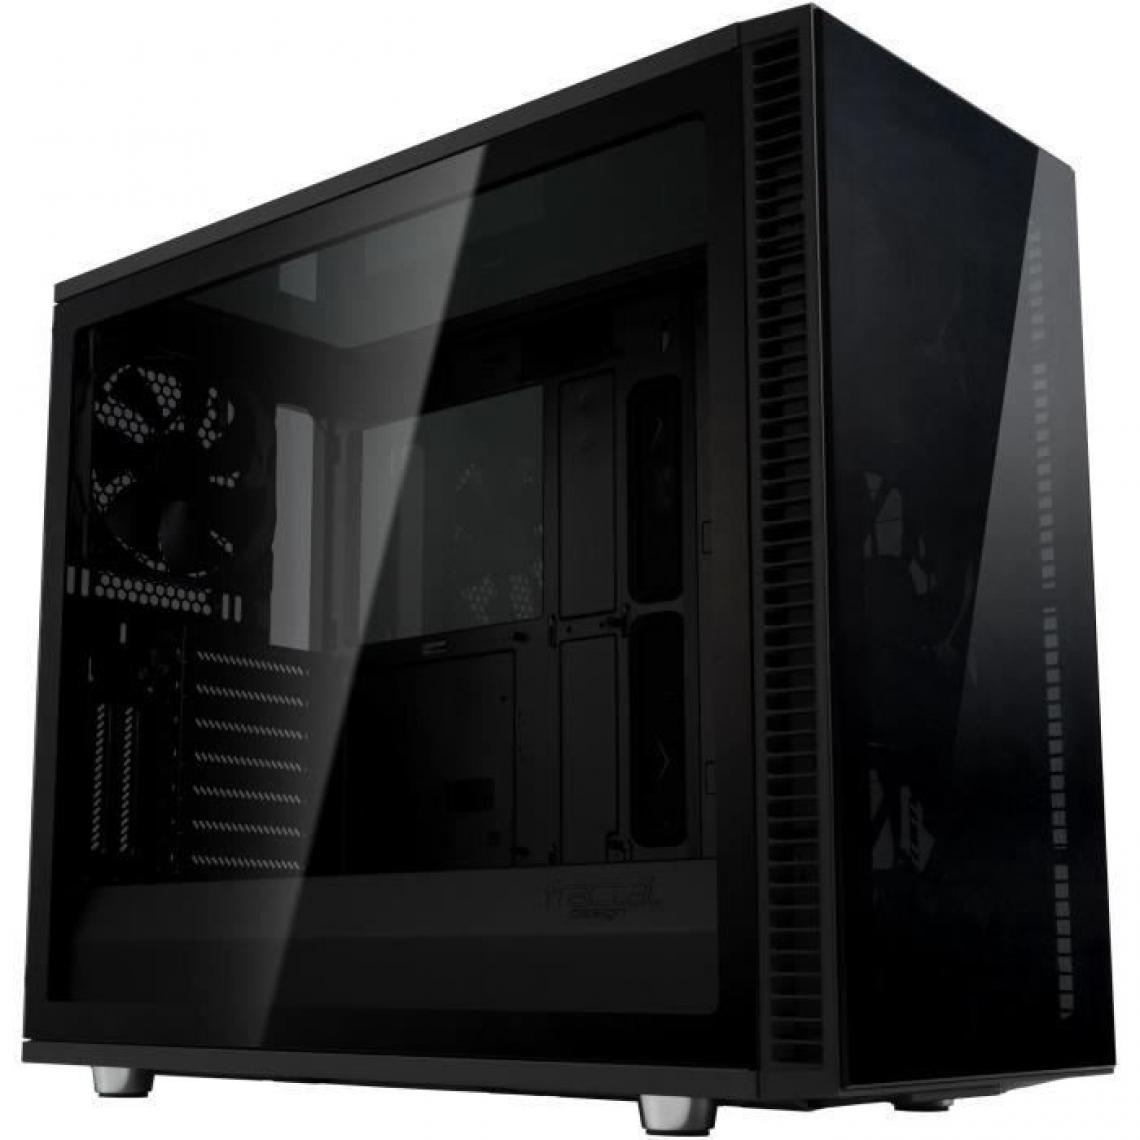 Fractal Design - FRACTAL DESIGN BOITIER PC Define S2 - Vision Blackout - Noir - Verre trempé - Format ATX (FD-CA-DEF-S2V-BKO-TGD) - Boitier PC